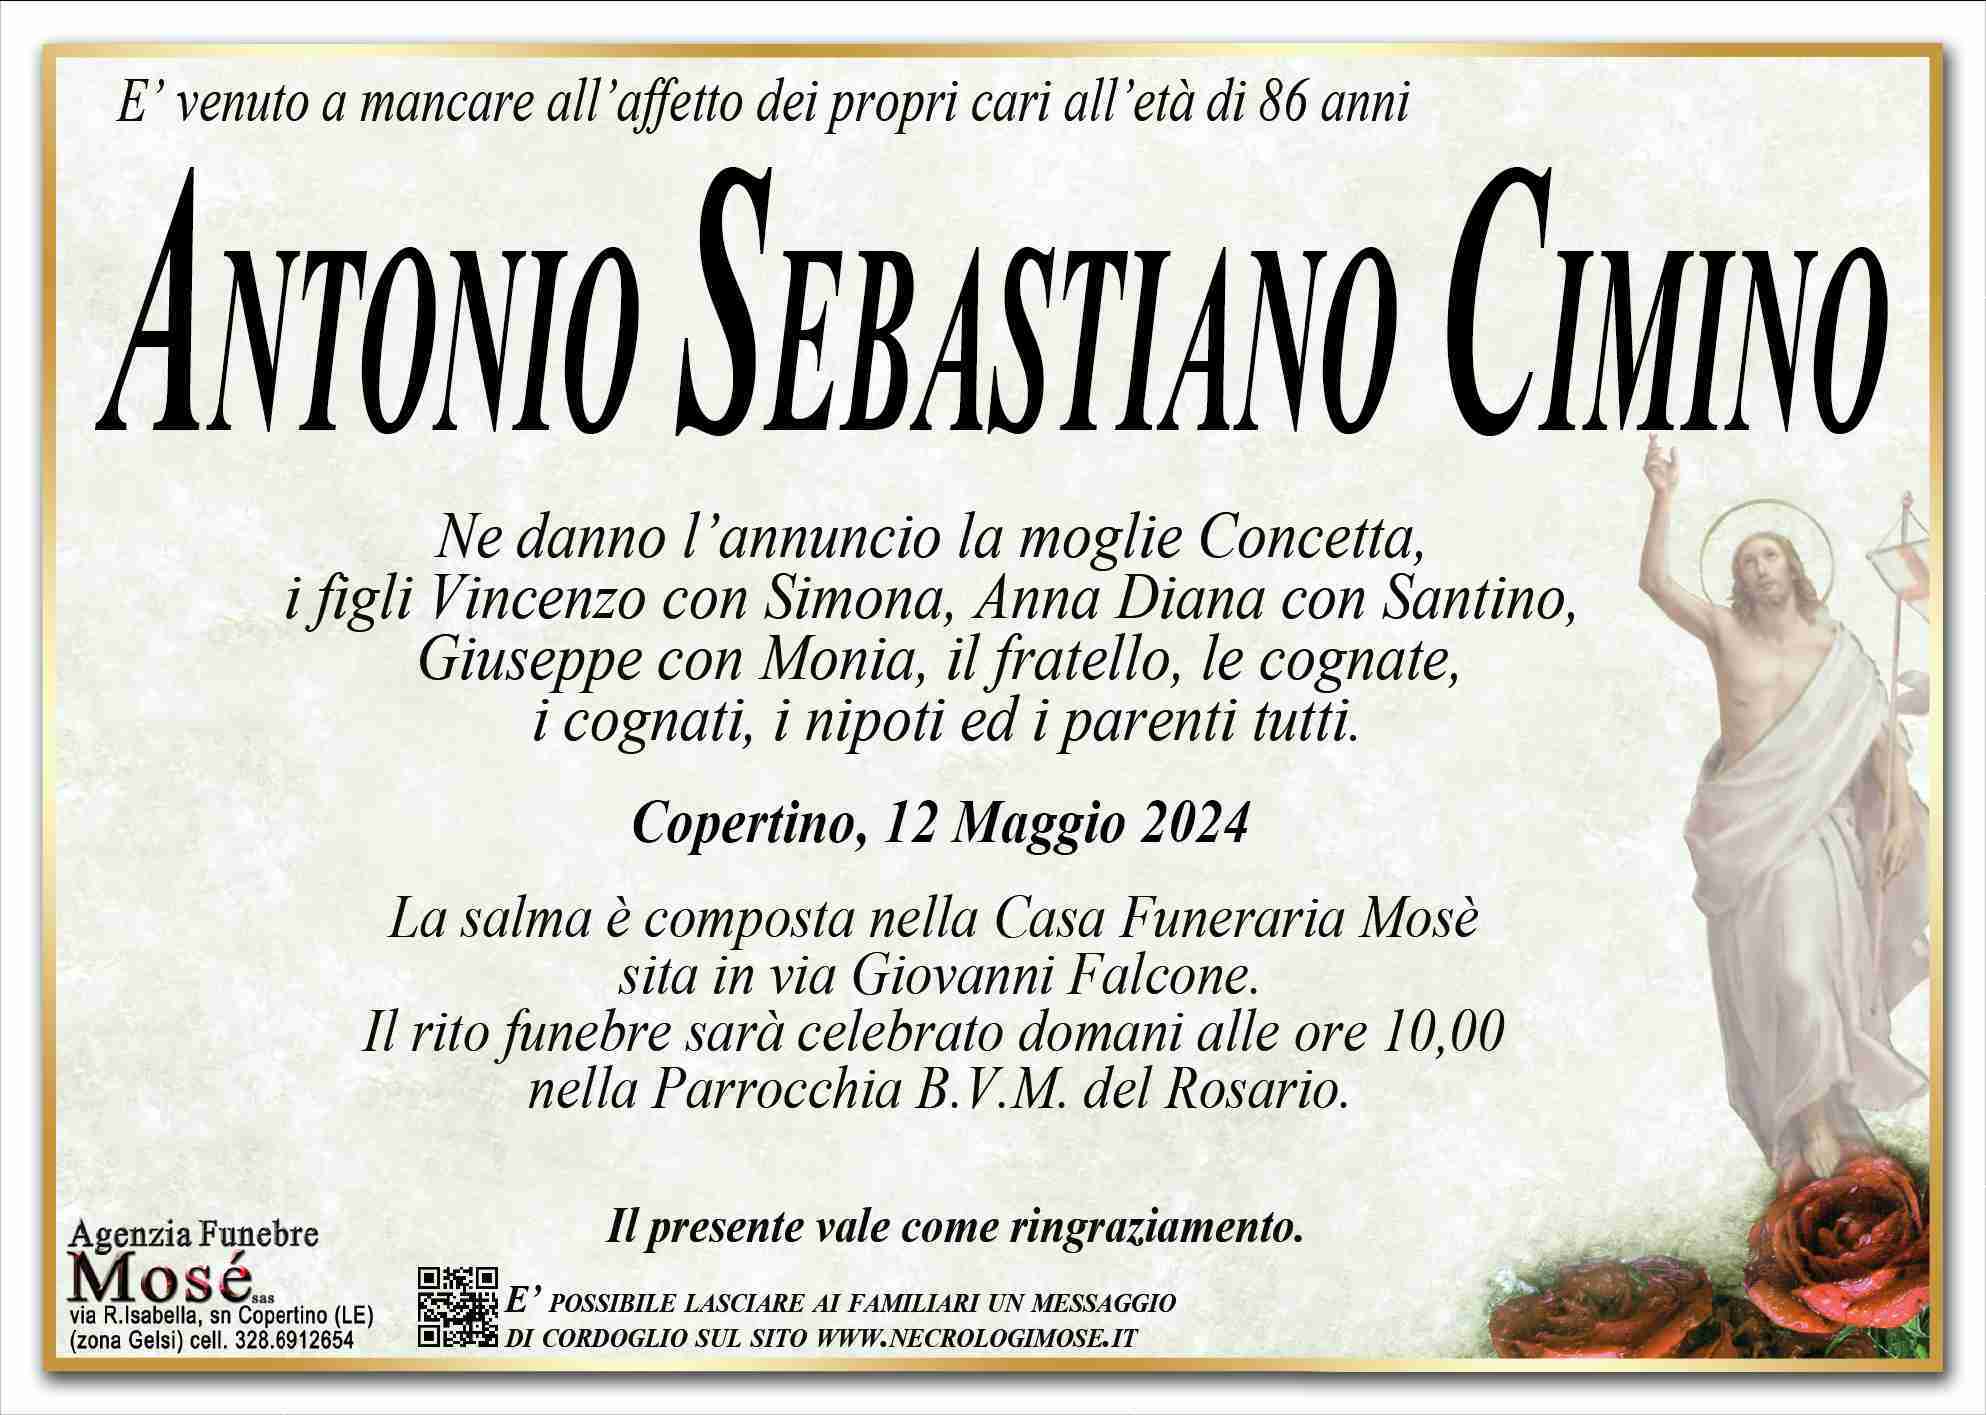 Antonio Sebastiano Cimino